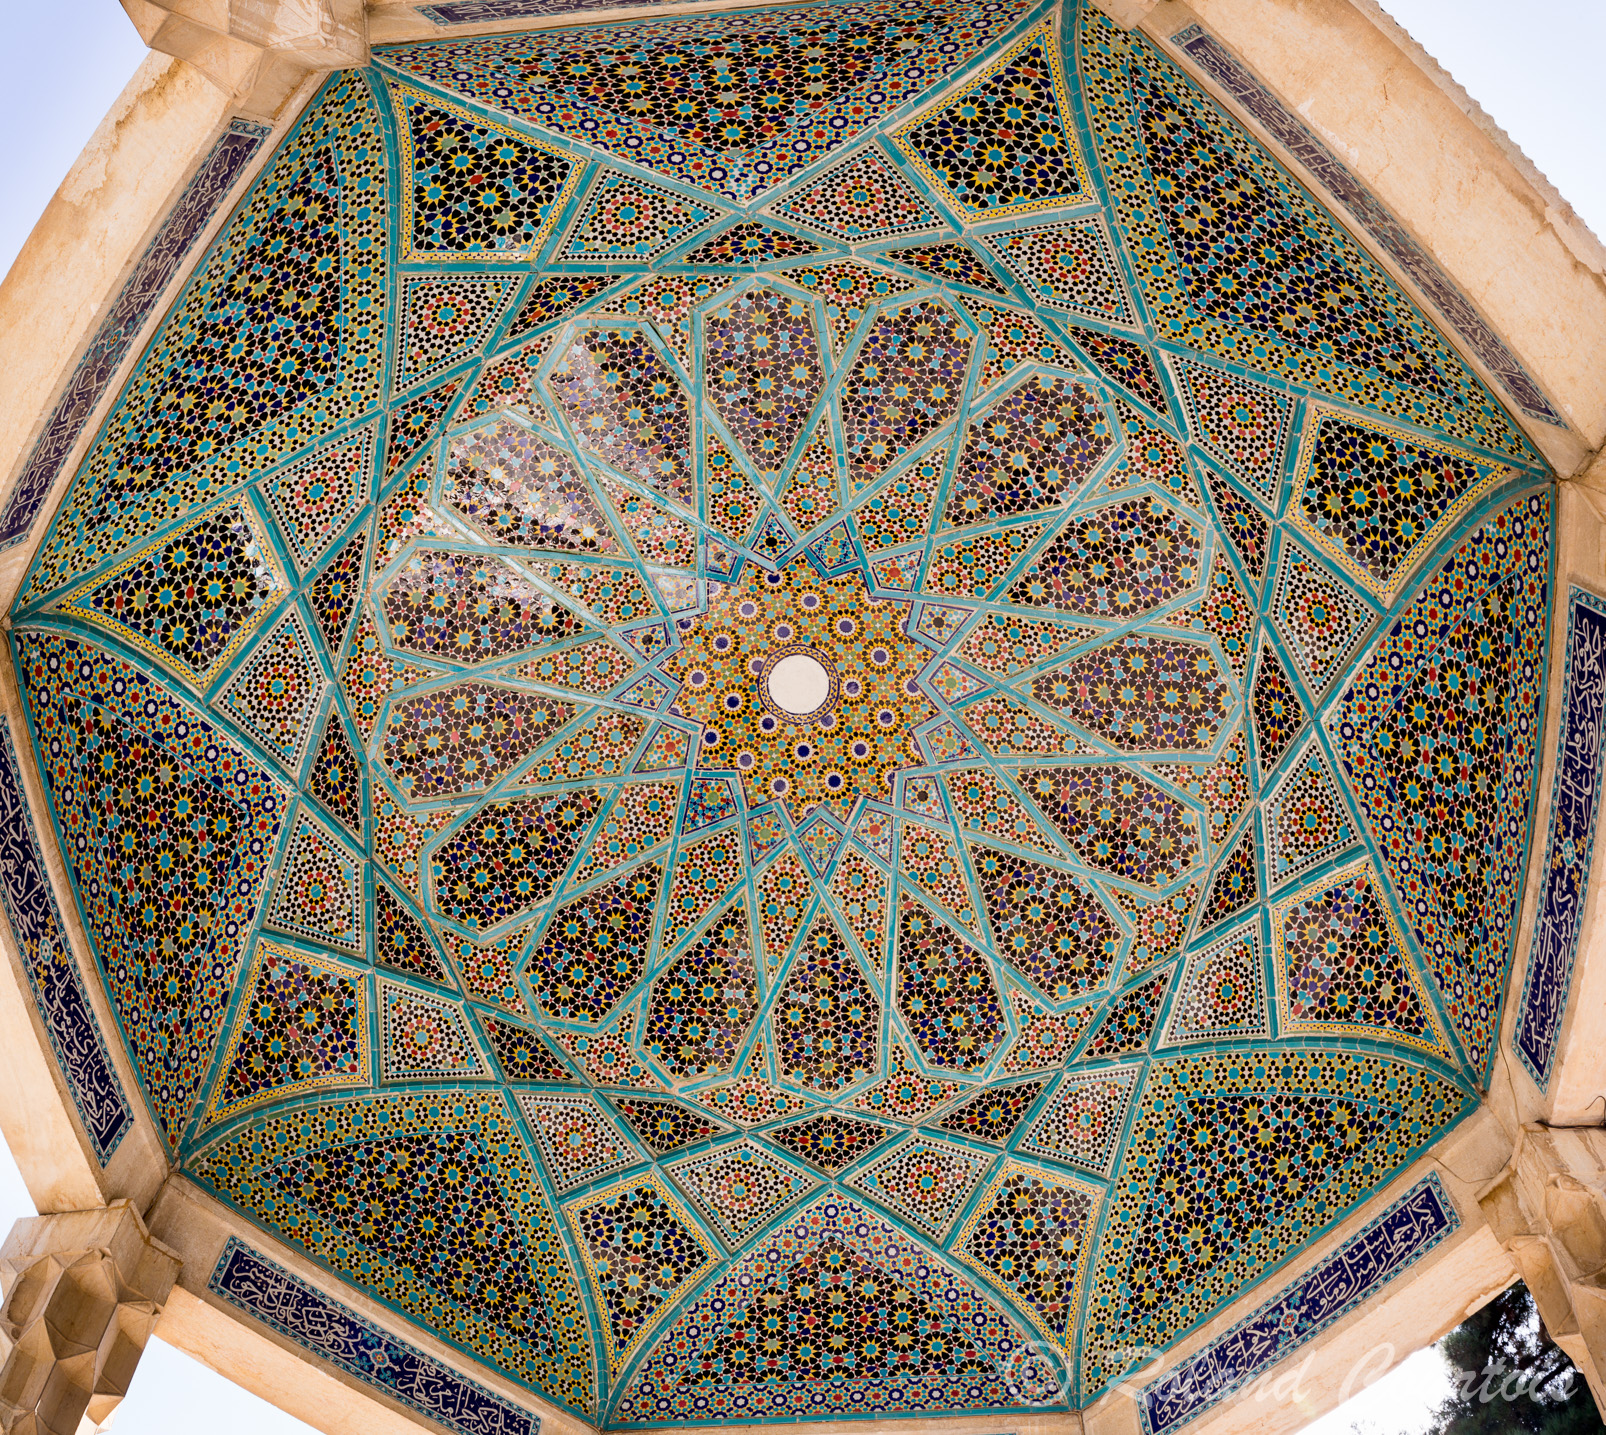 Le tombeau d'Hafez, autre maître de la poésie persane du 13ème siècle, construit par A. Godart en 1935 au centre d’un jardin, Ce mausolée est en forme de petit pavillon ouvert sur les côtés.